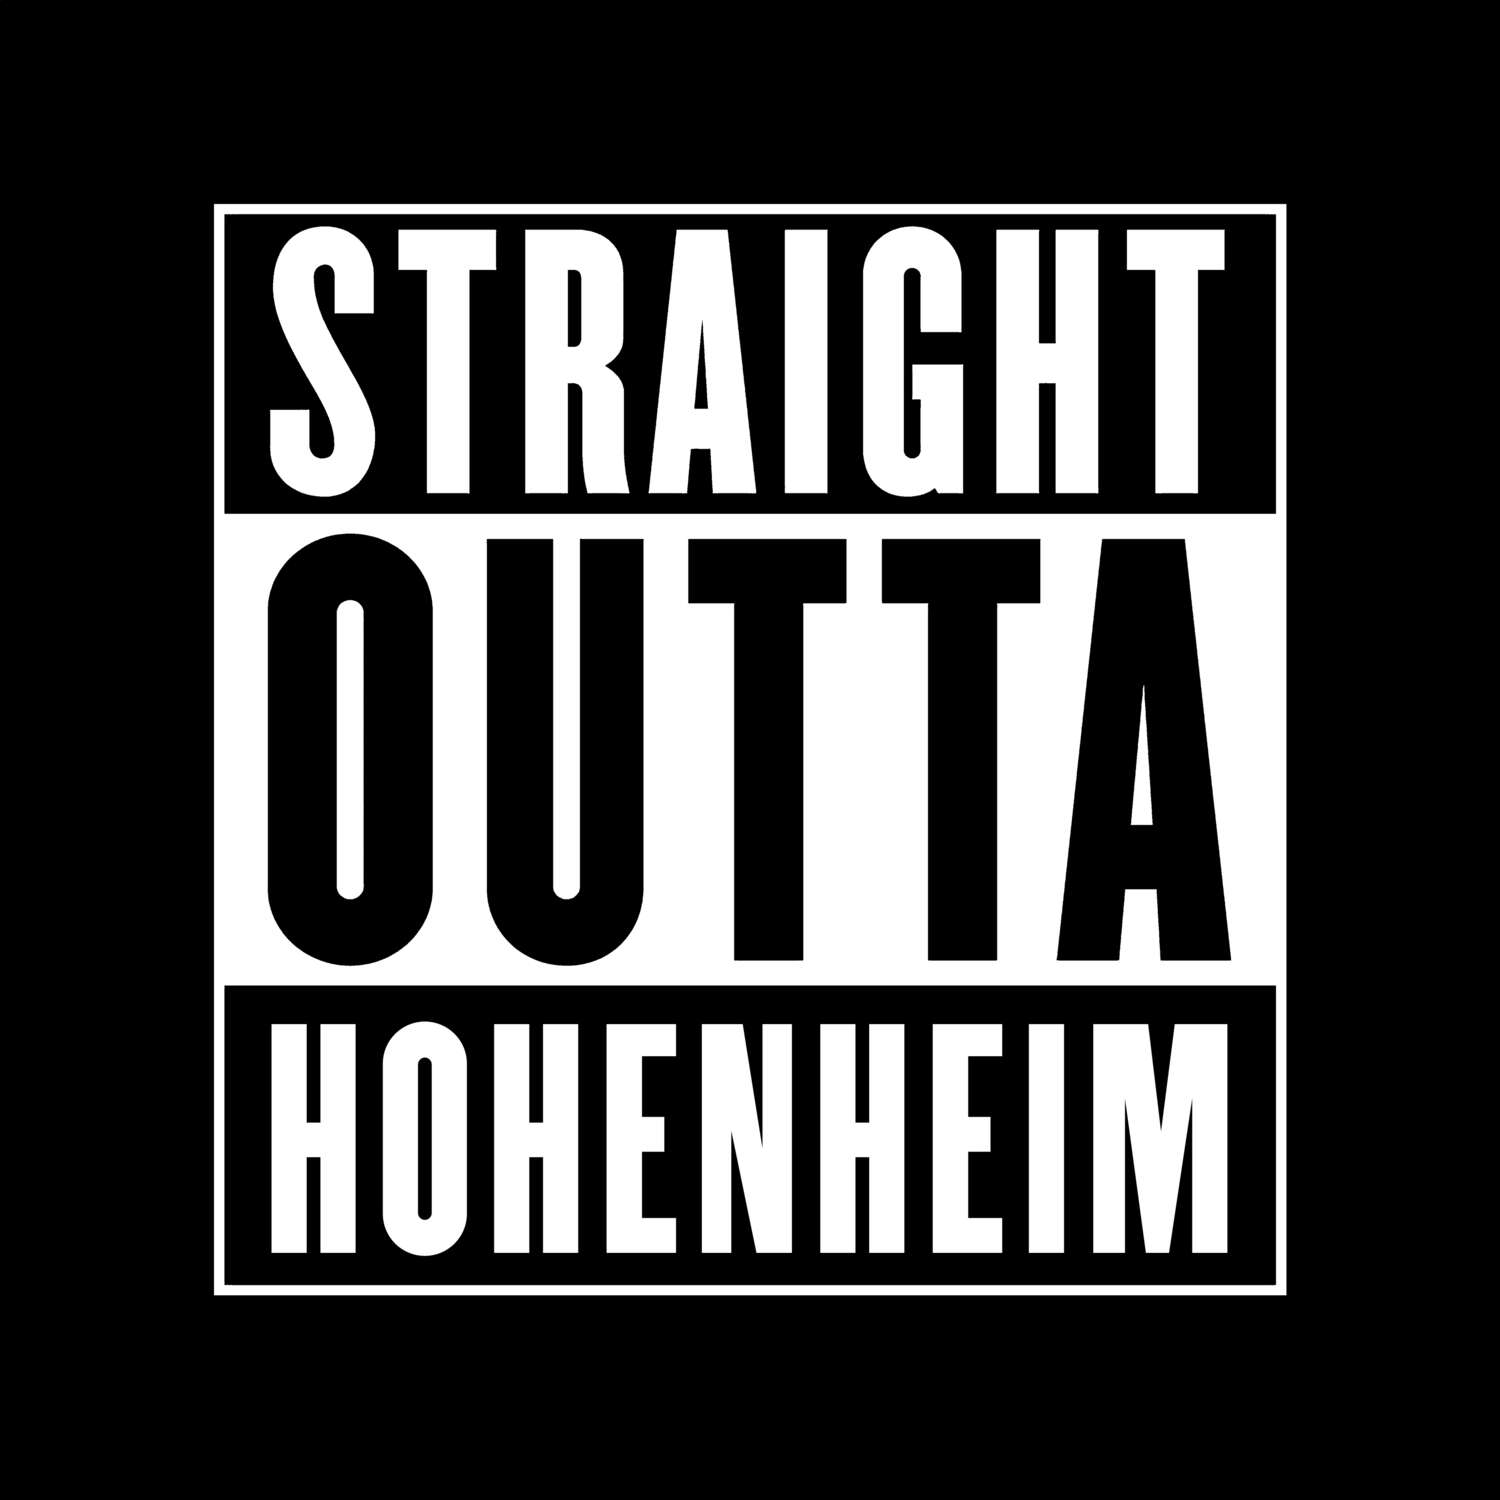 Hohenheim T-Shirt »Straight Outta«